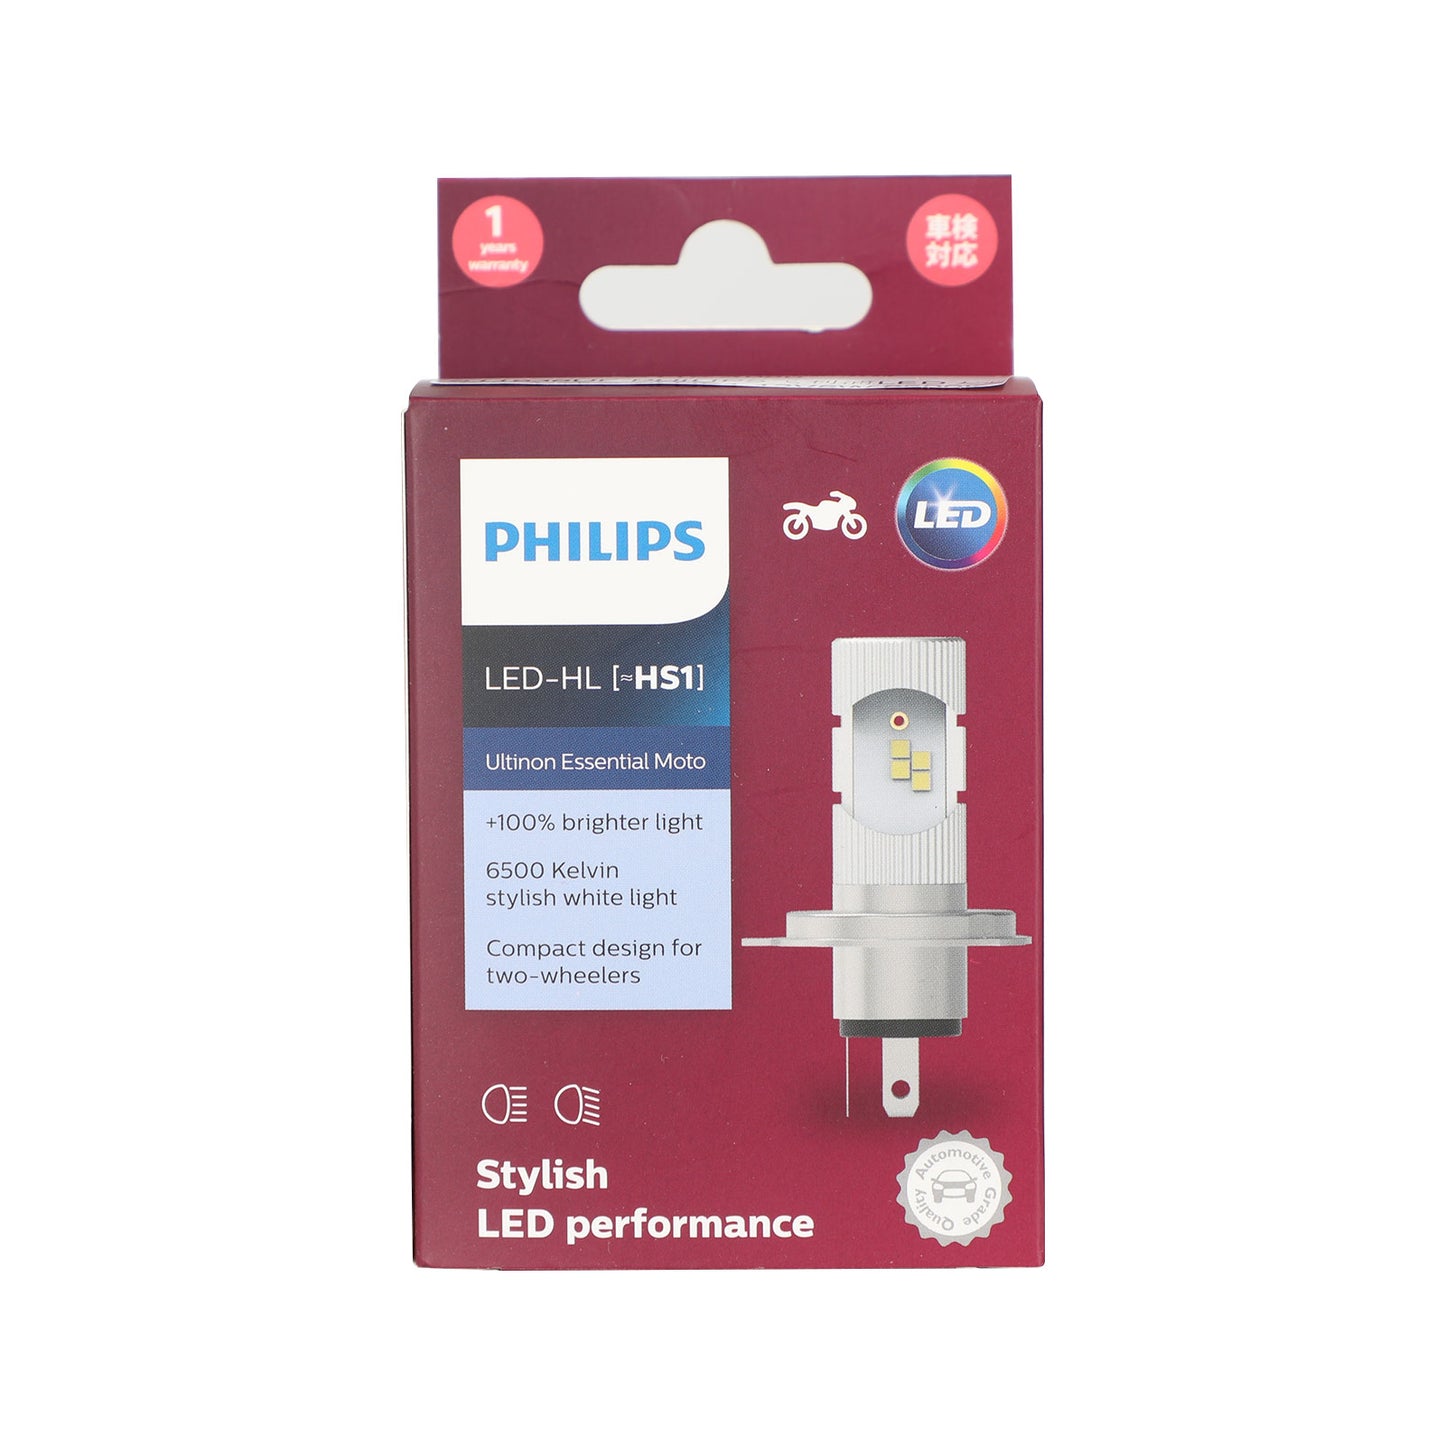 Pour Philips HS1 Ultinon Essential Moto + 100% de lumière blanche 6500K plus lumineuse